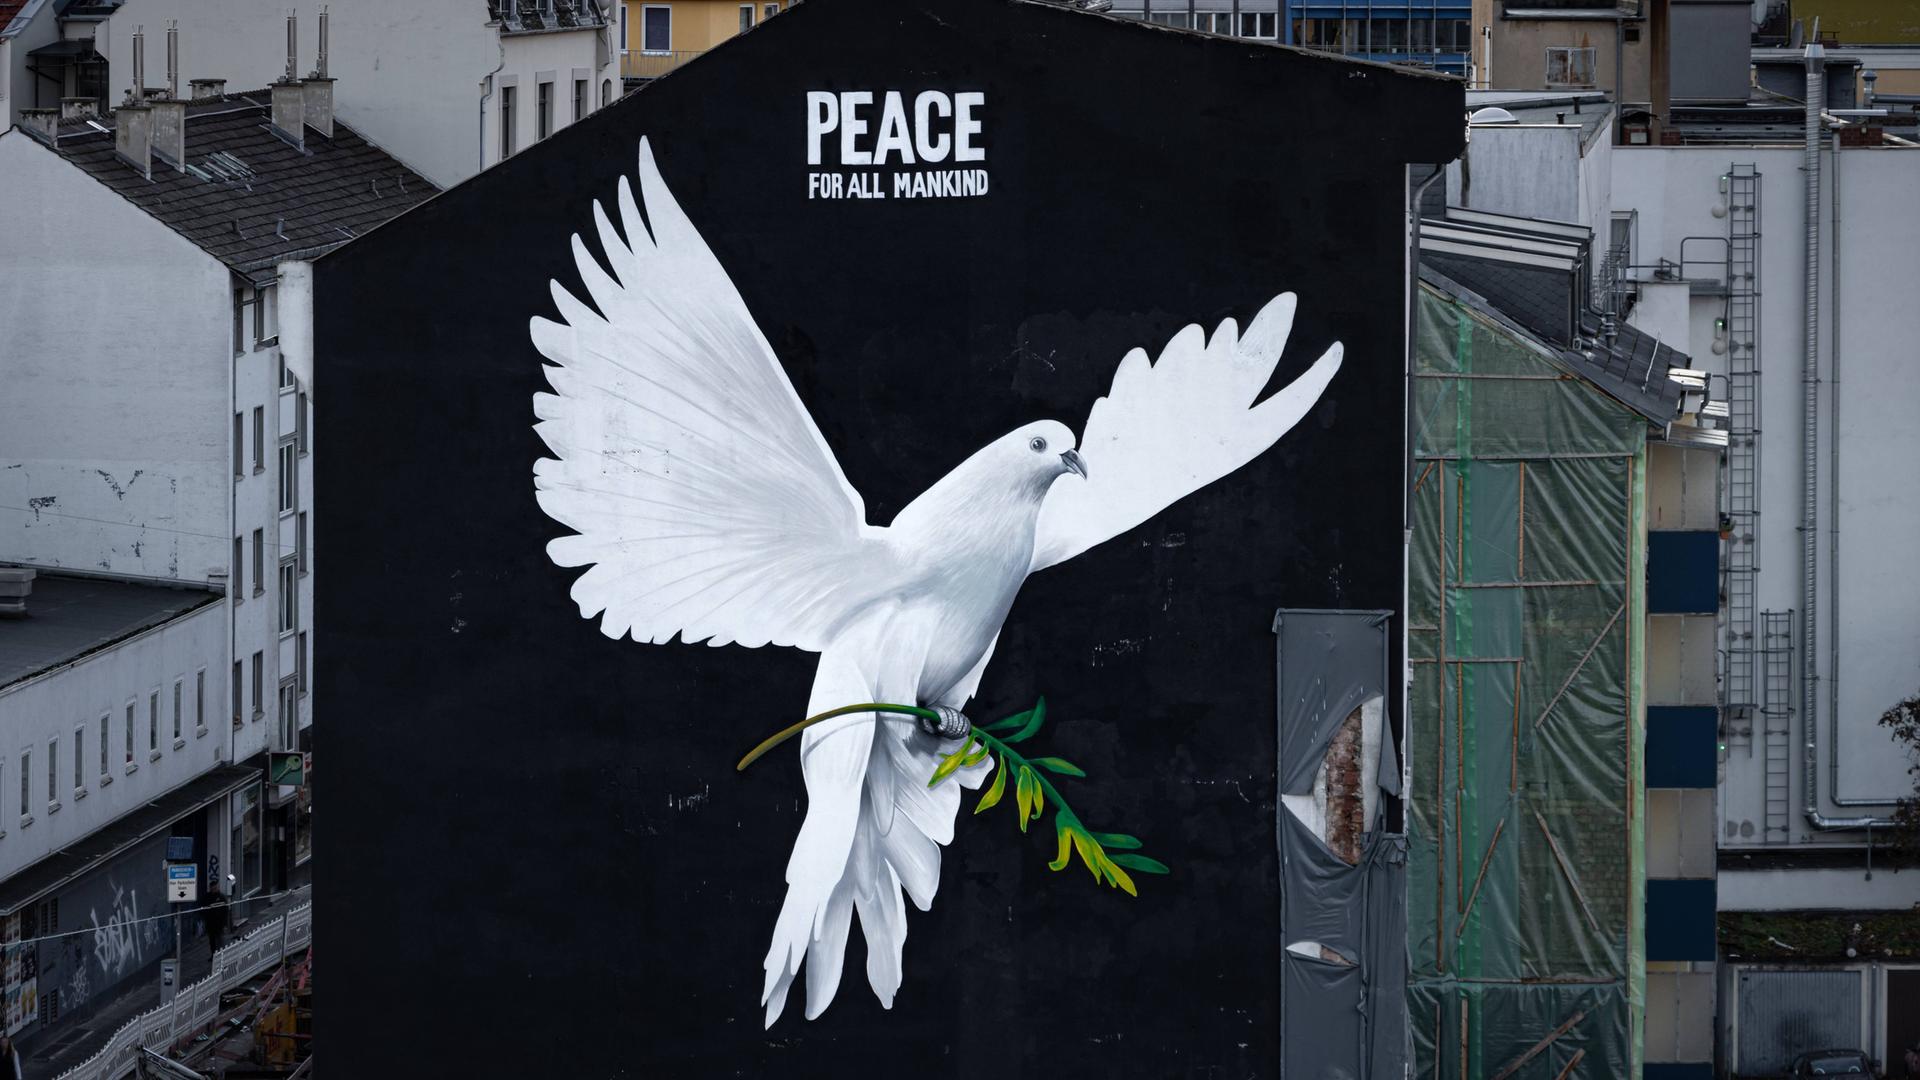 Eine Friedenstaube auf einer Häuserfassade mit der Überschrift "Peace for all mankind"